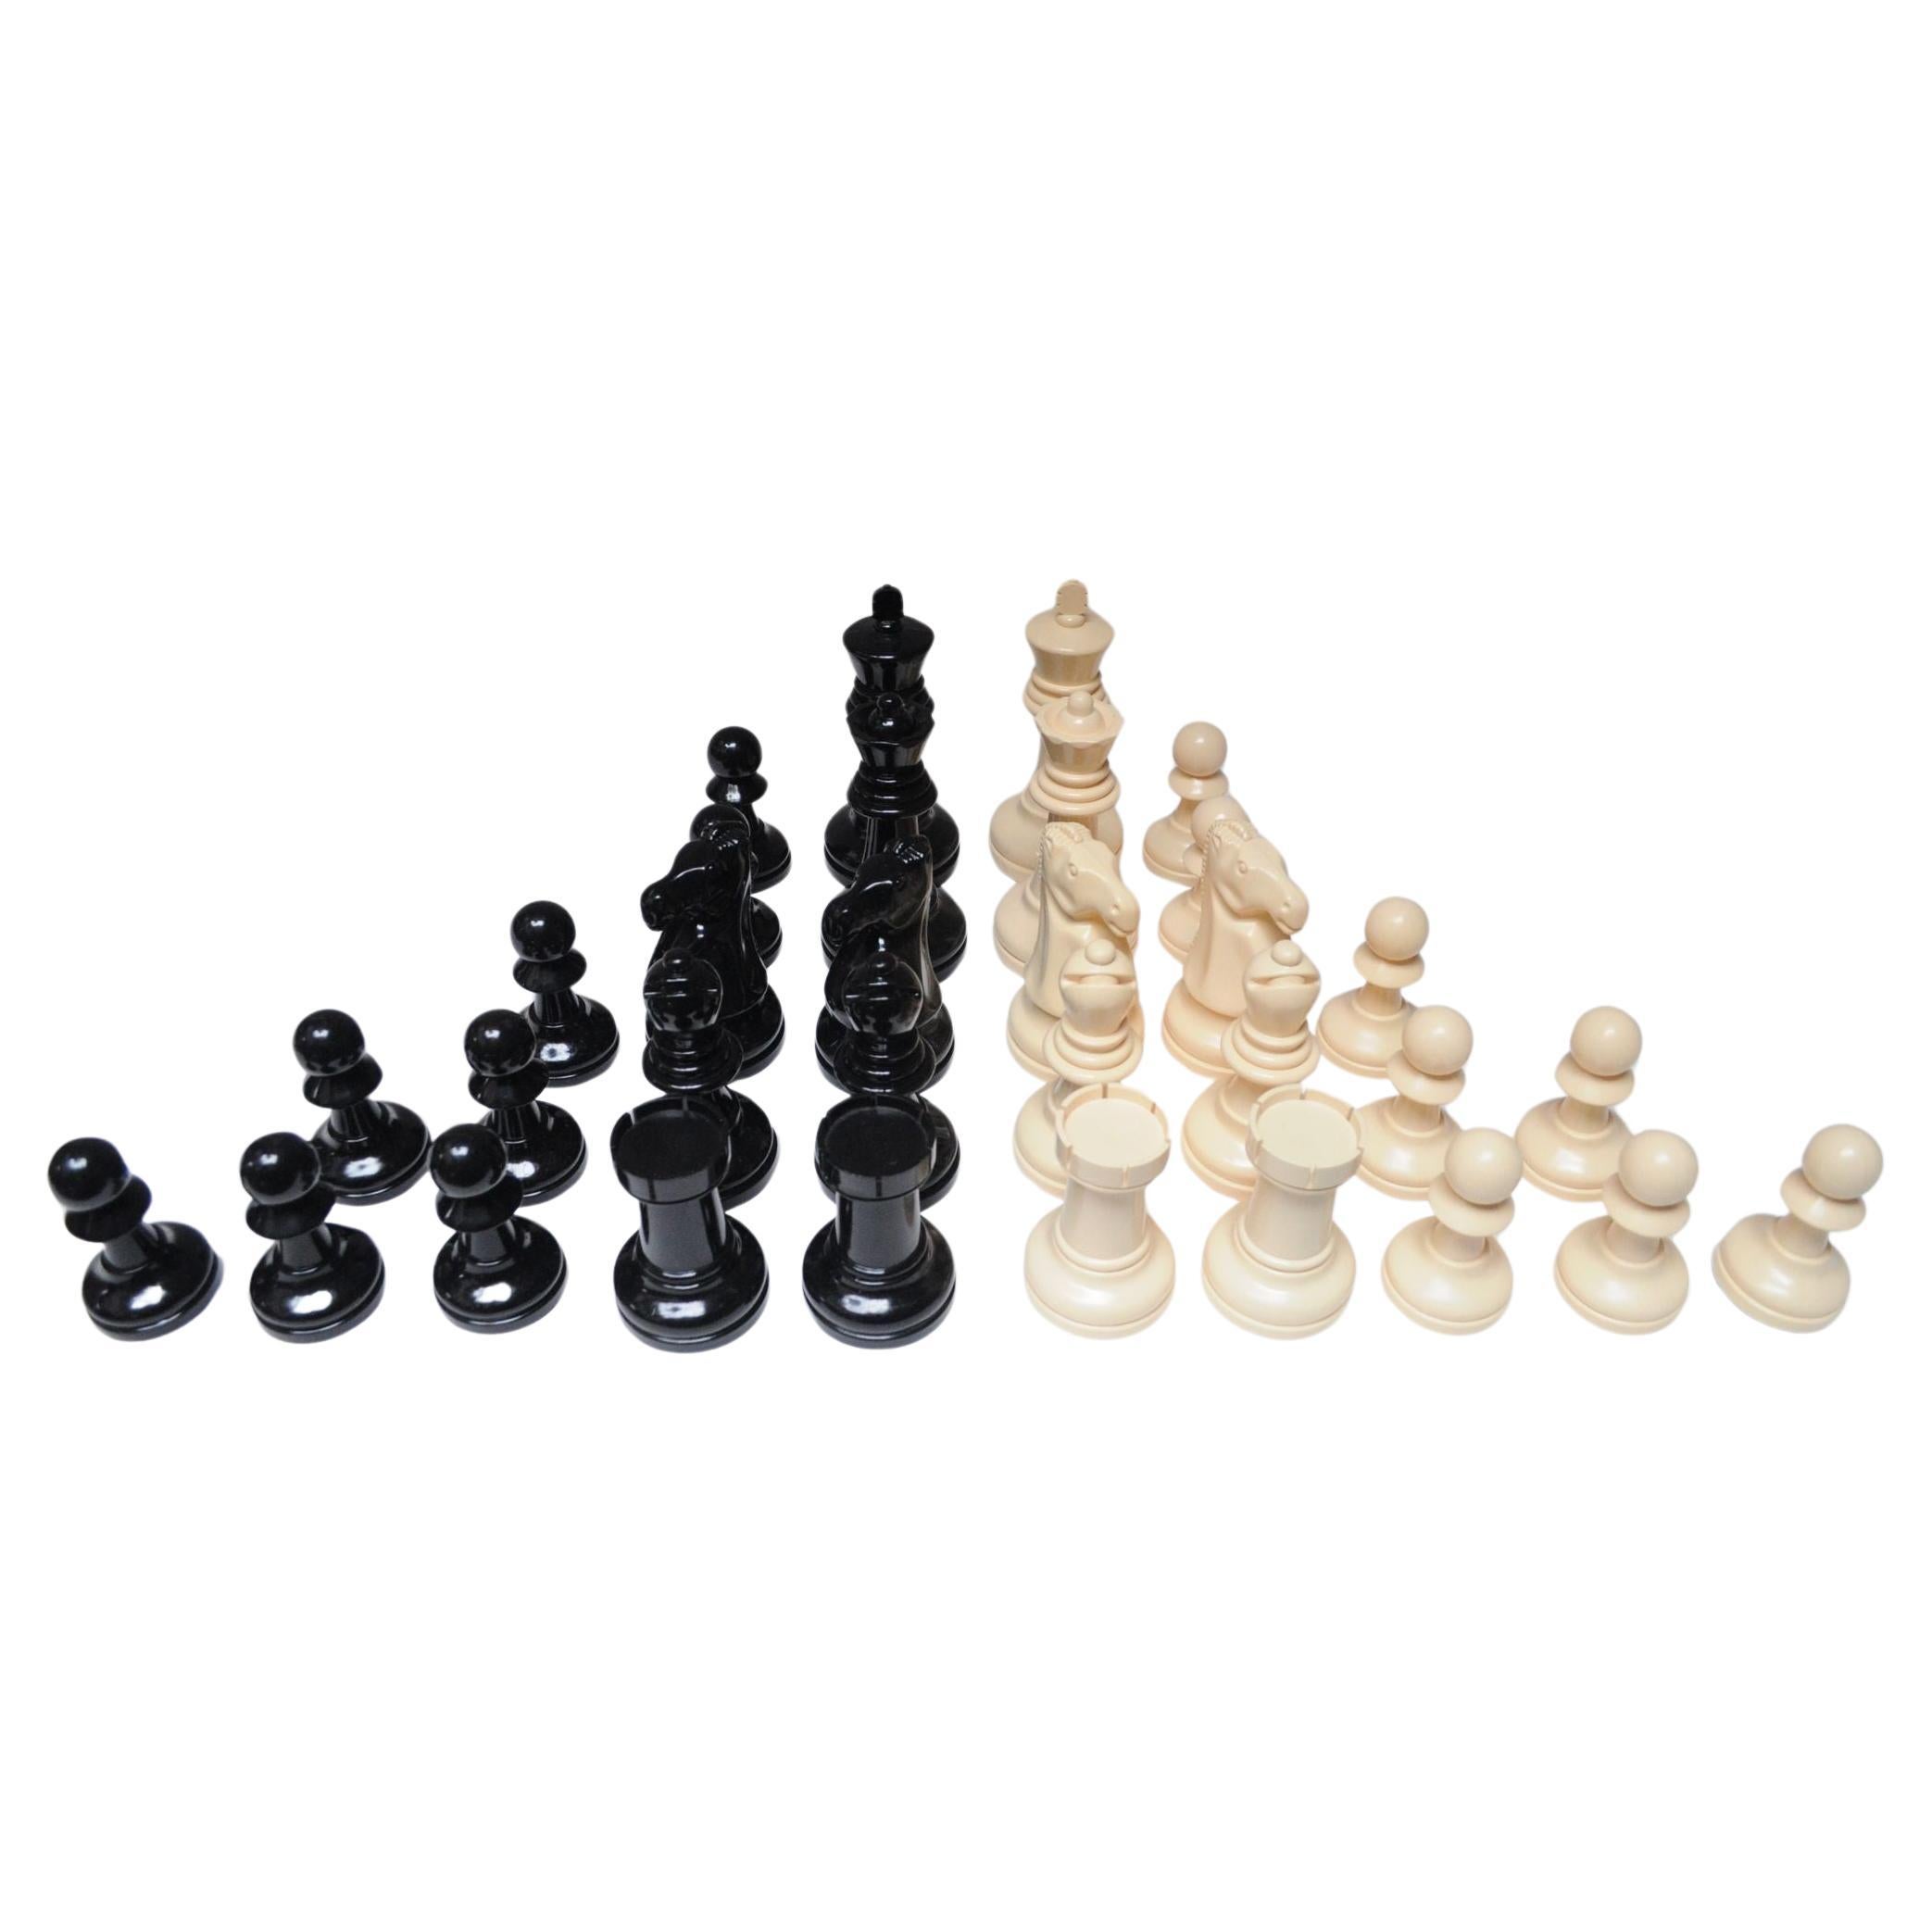 Kompletter Satz Vintage Oversized Chess Pieces in Schwarz und Creme Kunststoff